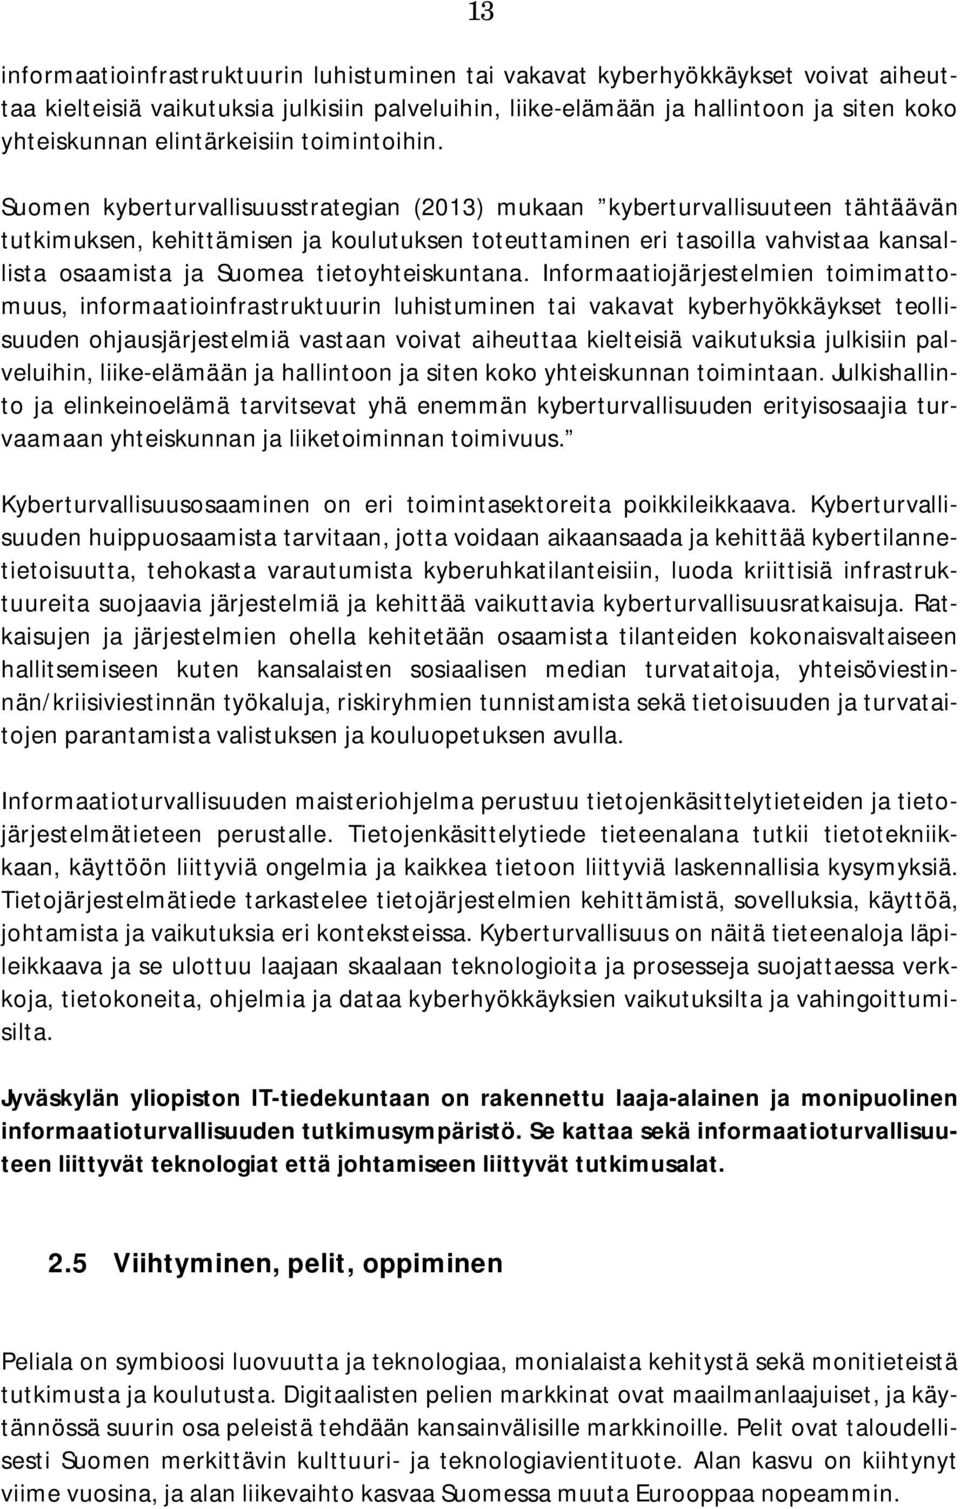 Suomen kyberturvallisuusstrategian (2013) mukaan kyberturvallisuuteen tähtäävän tutkimuksen, kehittämisen ja koulutuksen toteuttaminen eri tasoilla vahvistaa kansallista osaamista ja Suomea